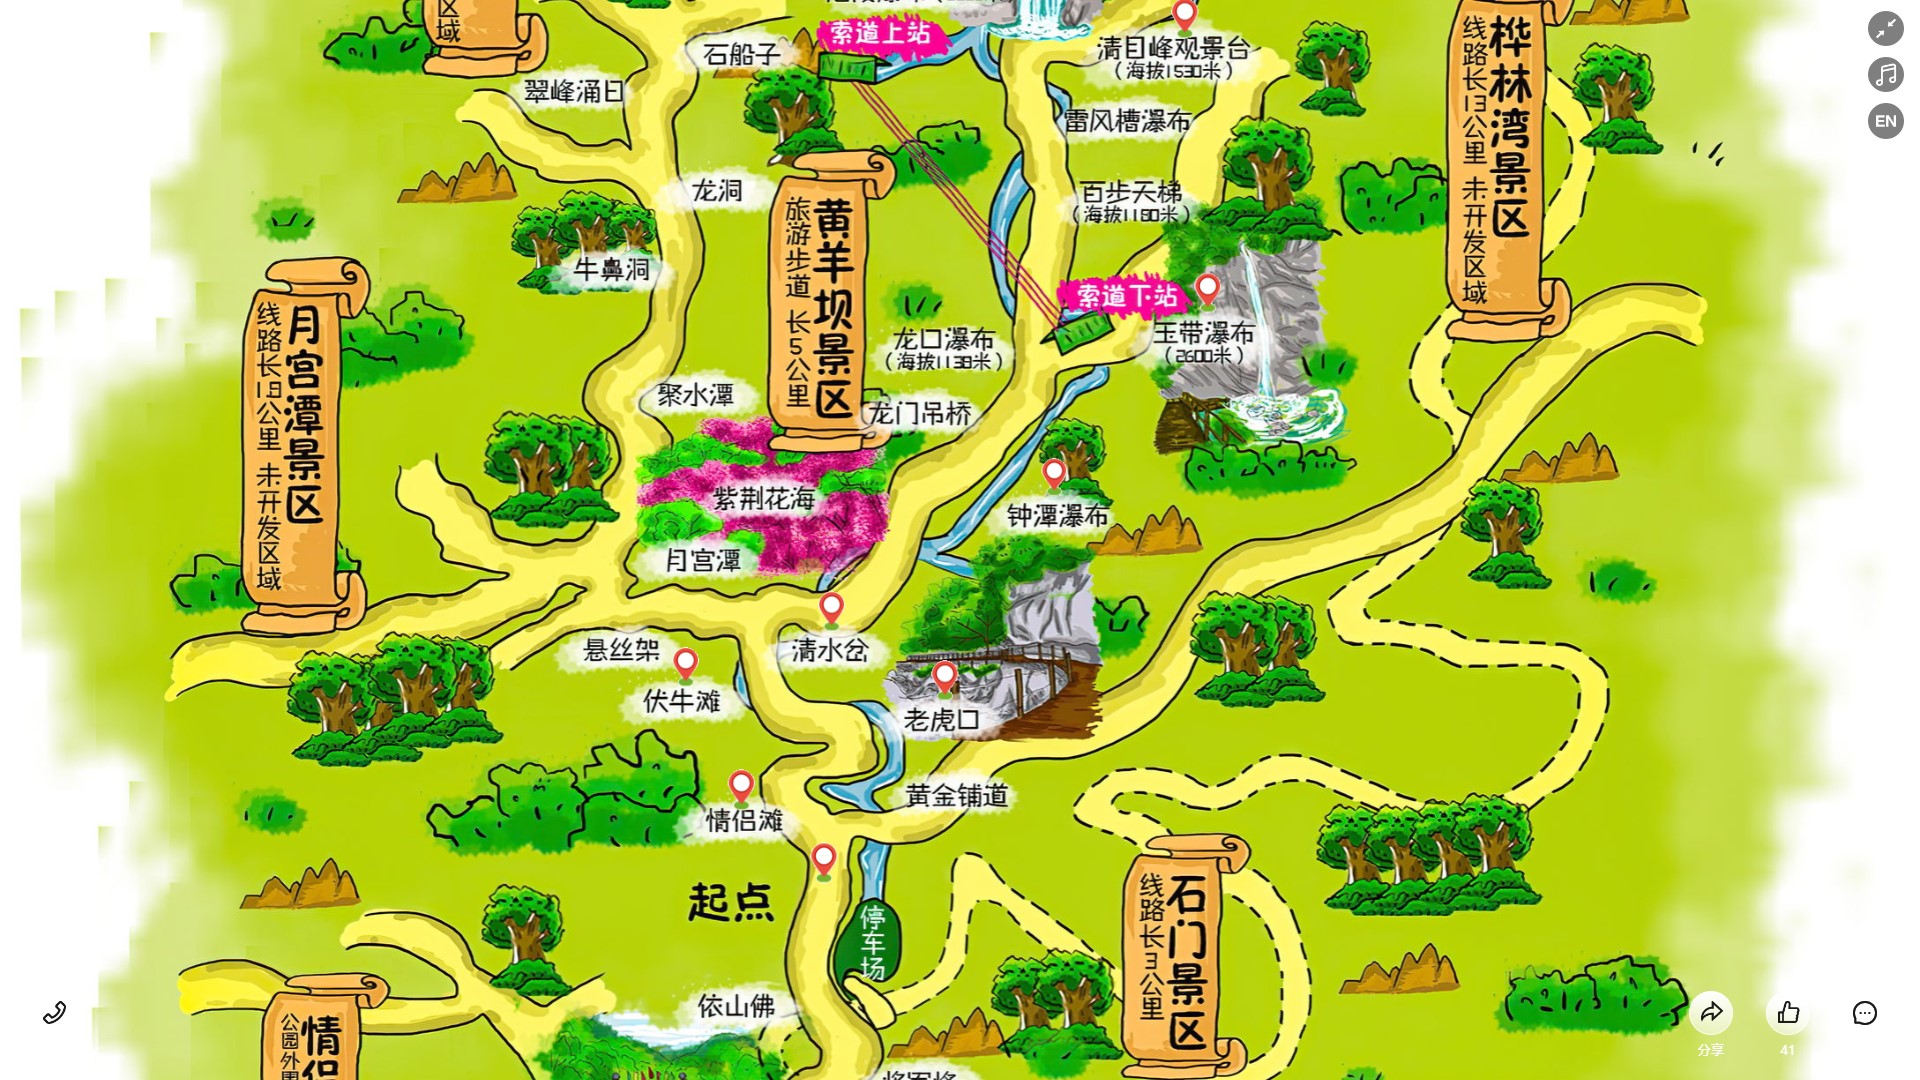 乌坡镇景区导览系统